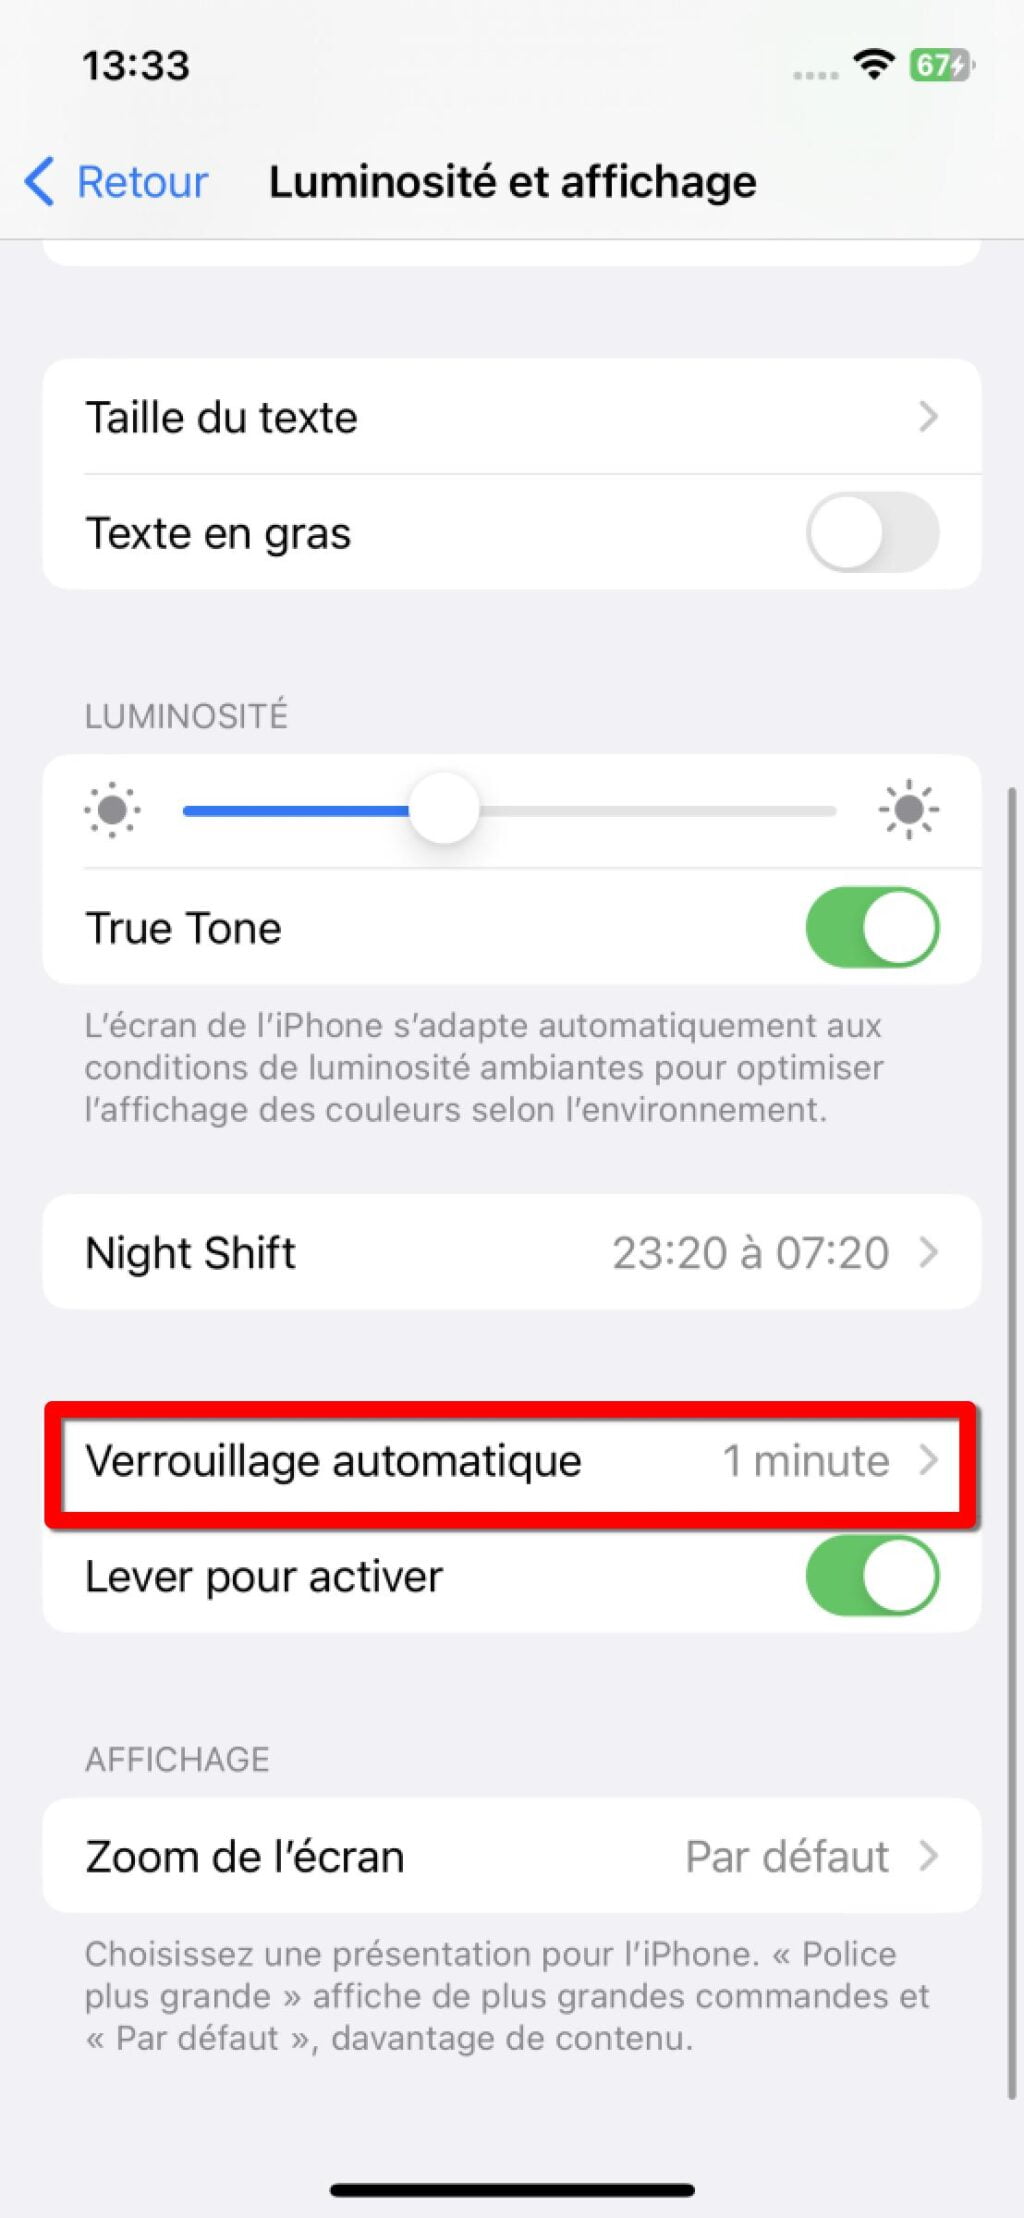 iphone verrouillage automatique | 7 conseils simples pour économiser la batterie d'un iPhone